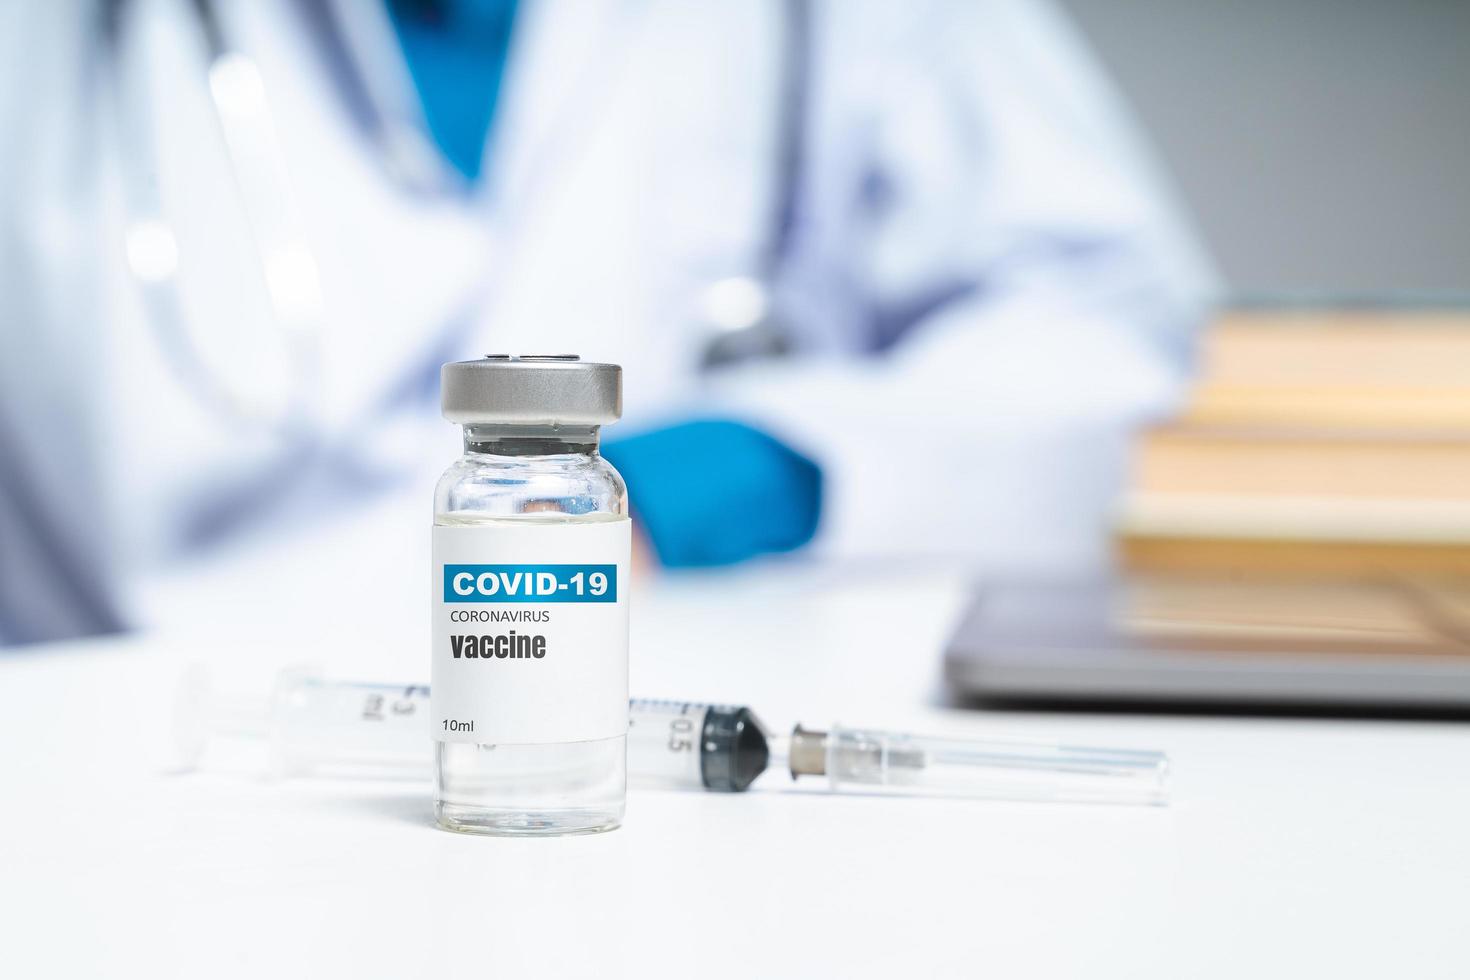 covid-19 coronavirusvaccin op tafel met arts of wetenschapper op de achtergrond. covid-19 coronavirus behandelingsconcept. foto